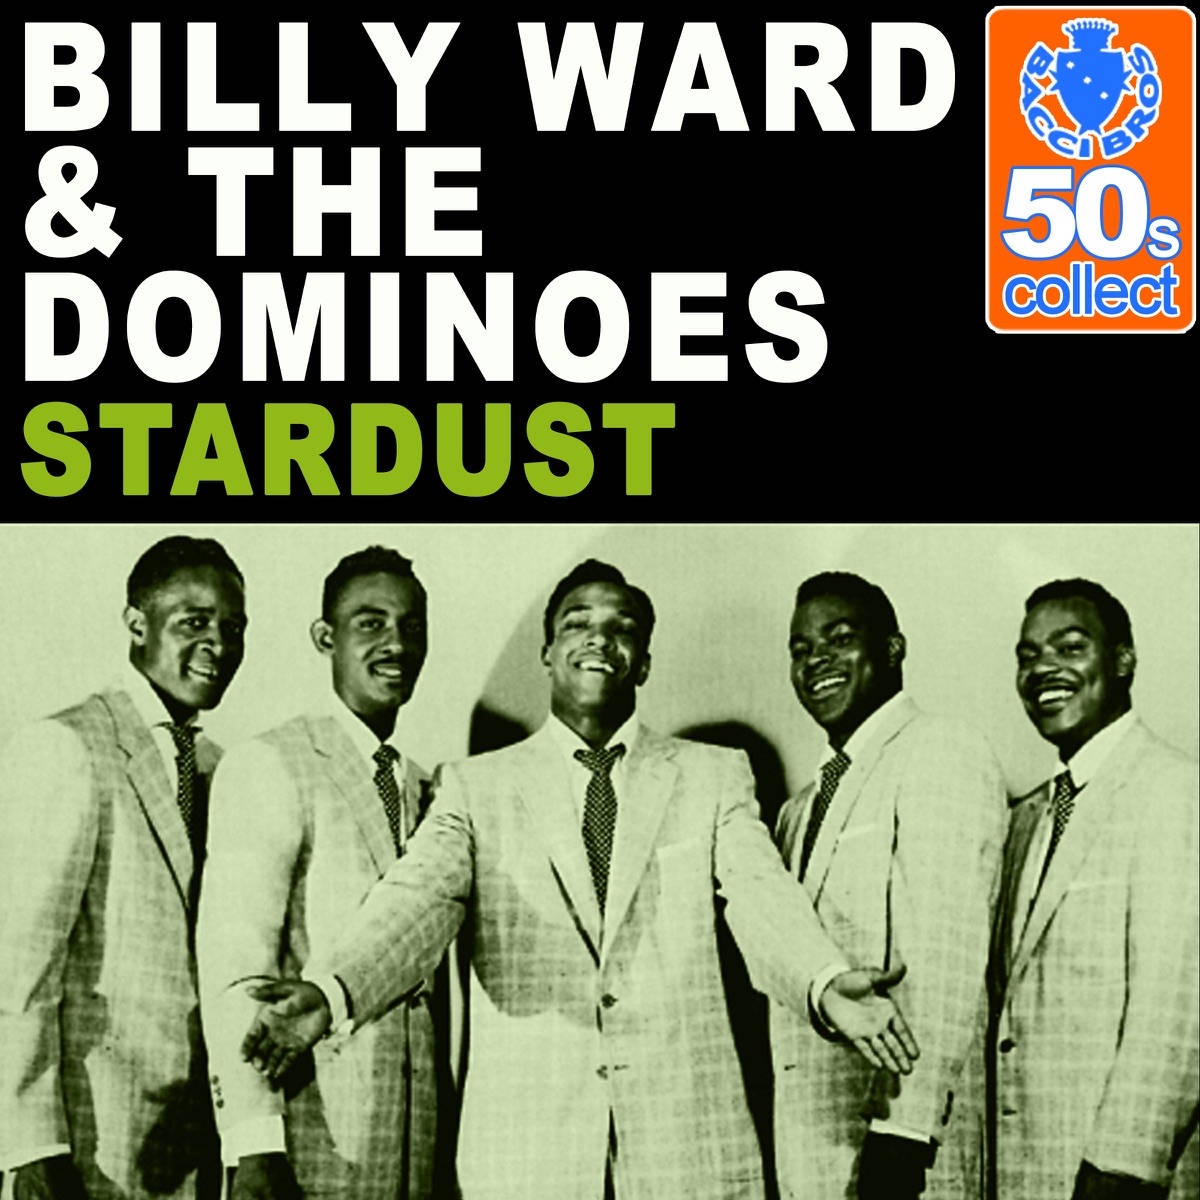 Billy Ward og The Dominoes Stardust Album Cover Wallpaper